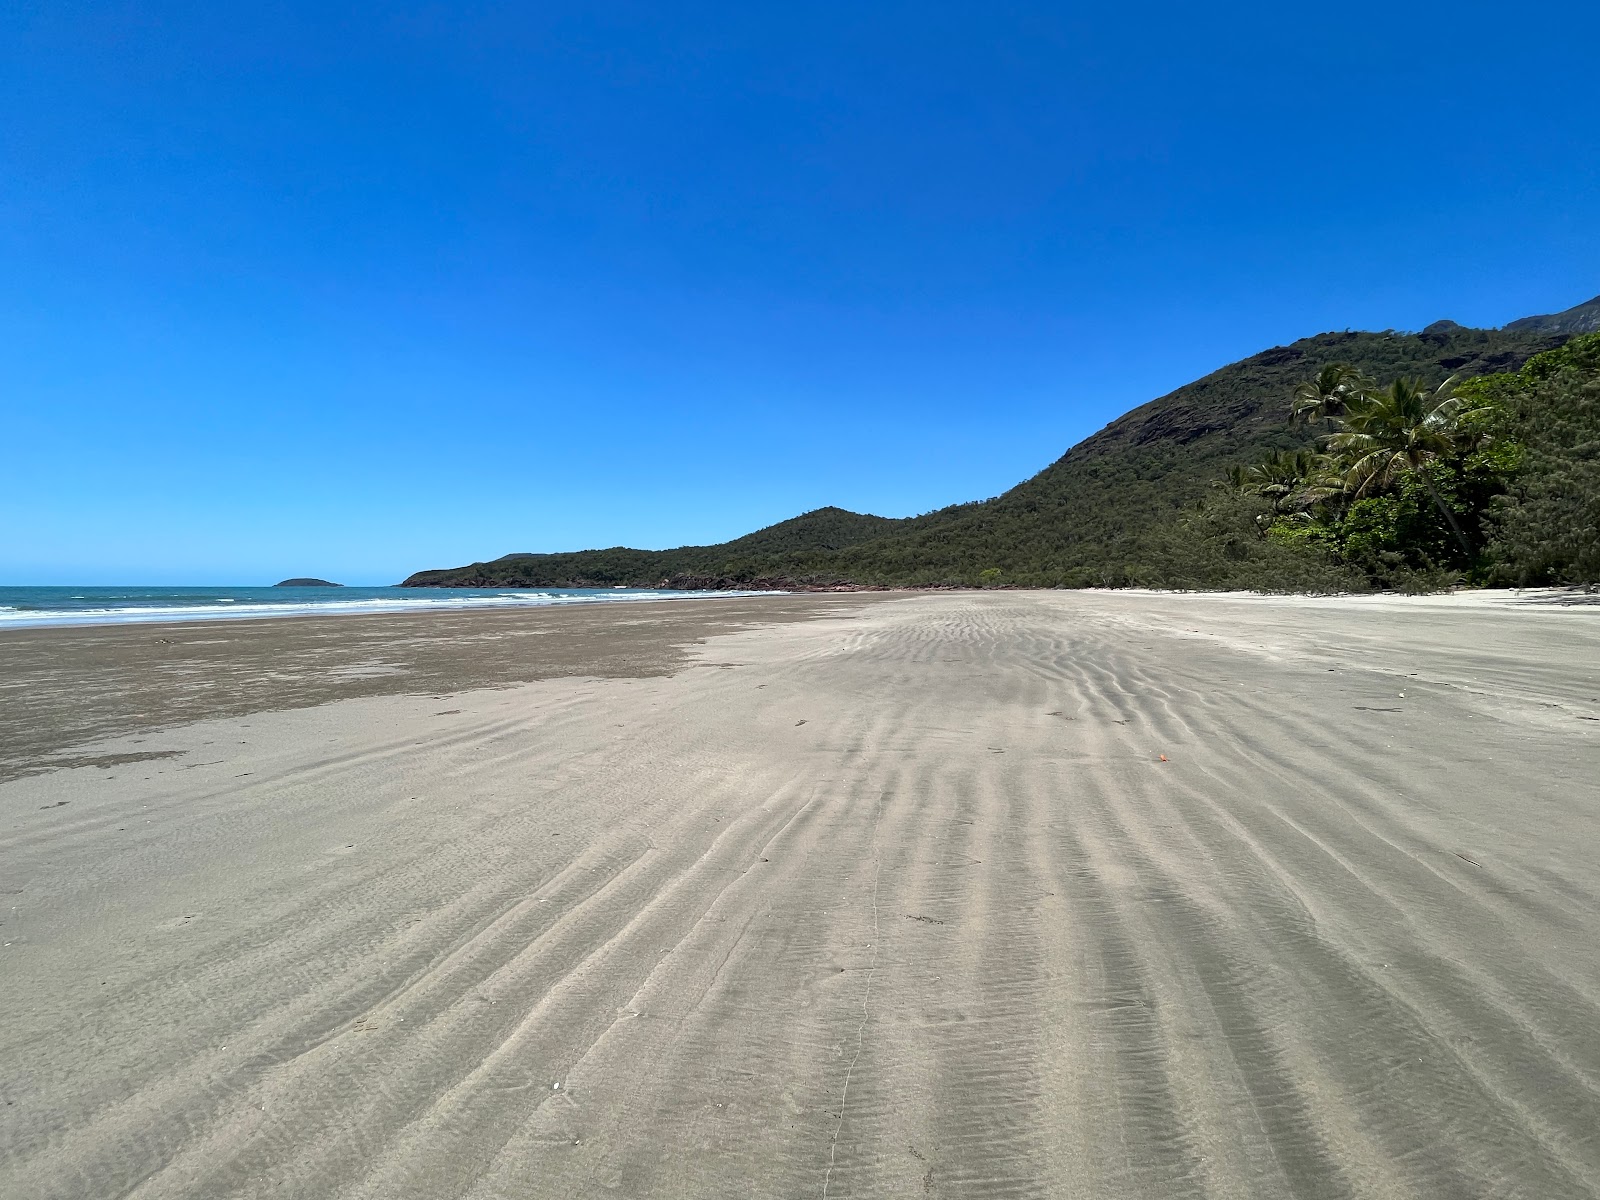 Fotografie cu Nina Bay cu o suprafață de nisip strălucitor